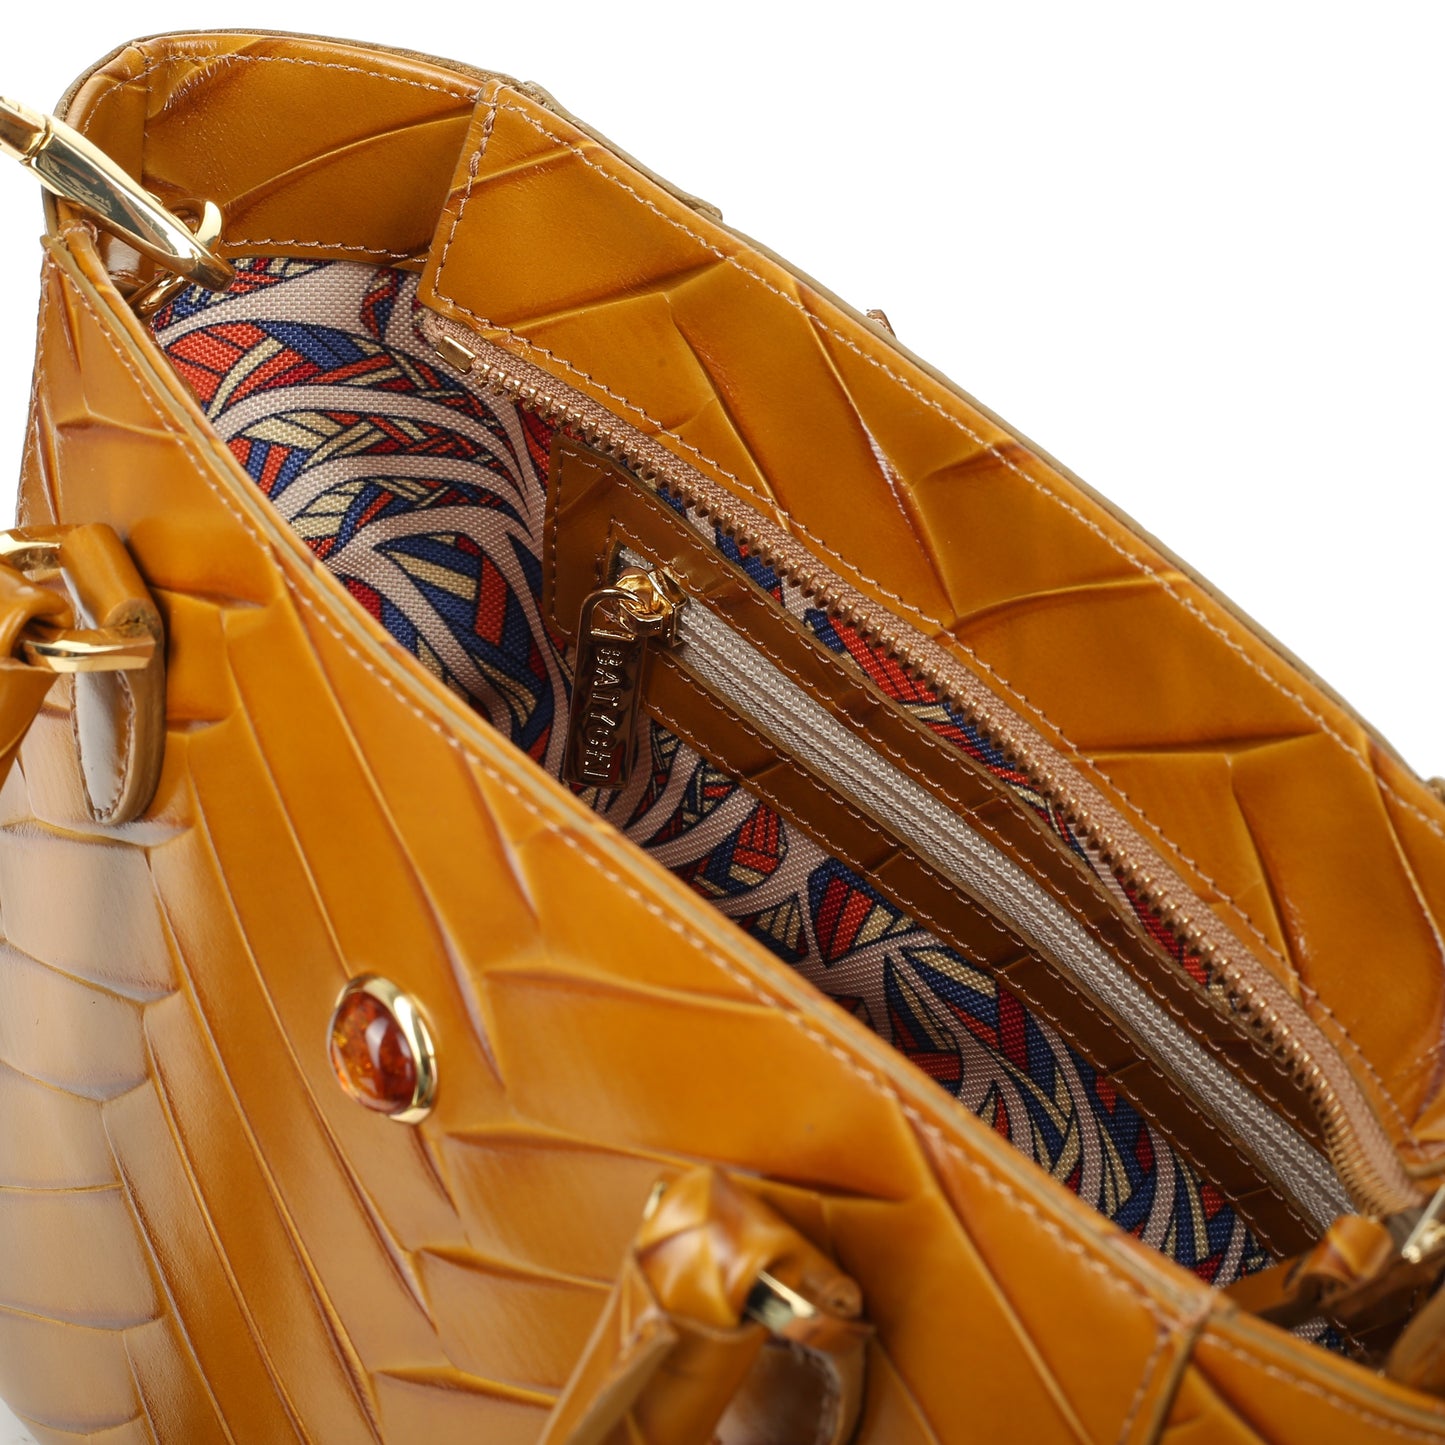 STAMPIA S HONEY women's leather handbag